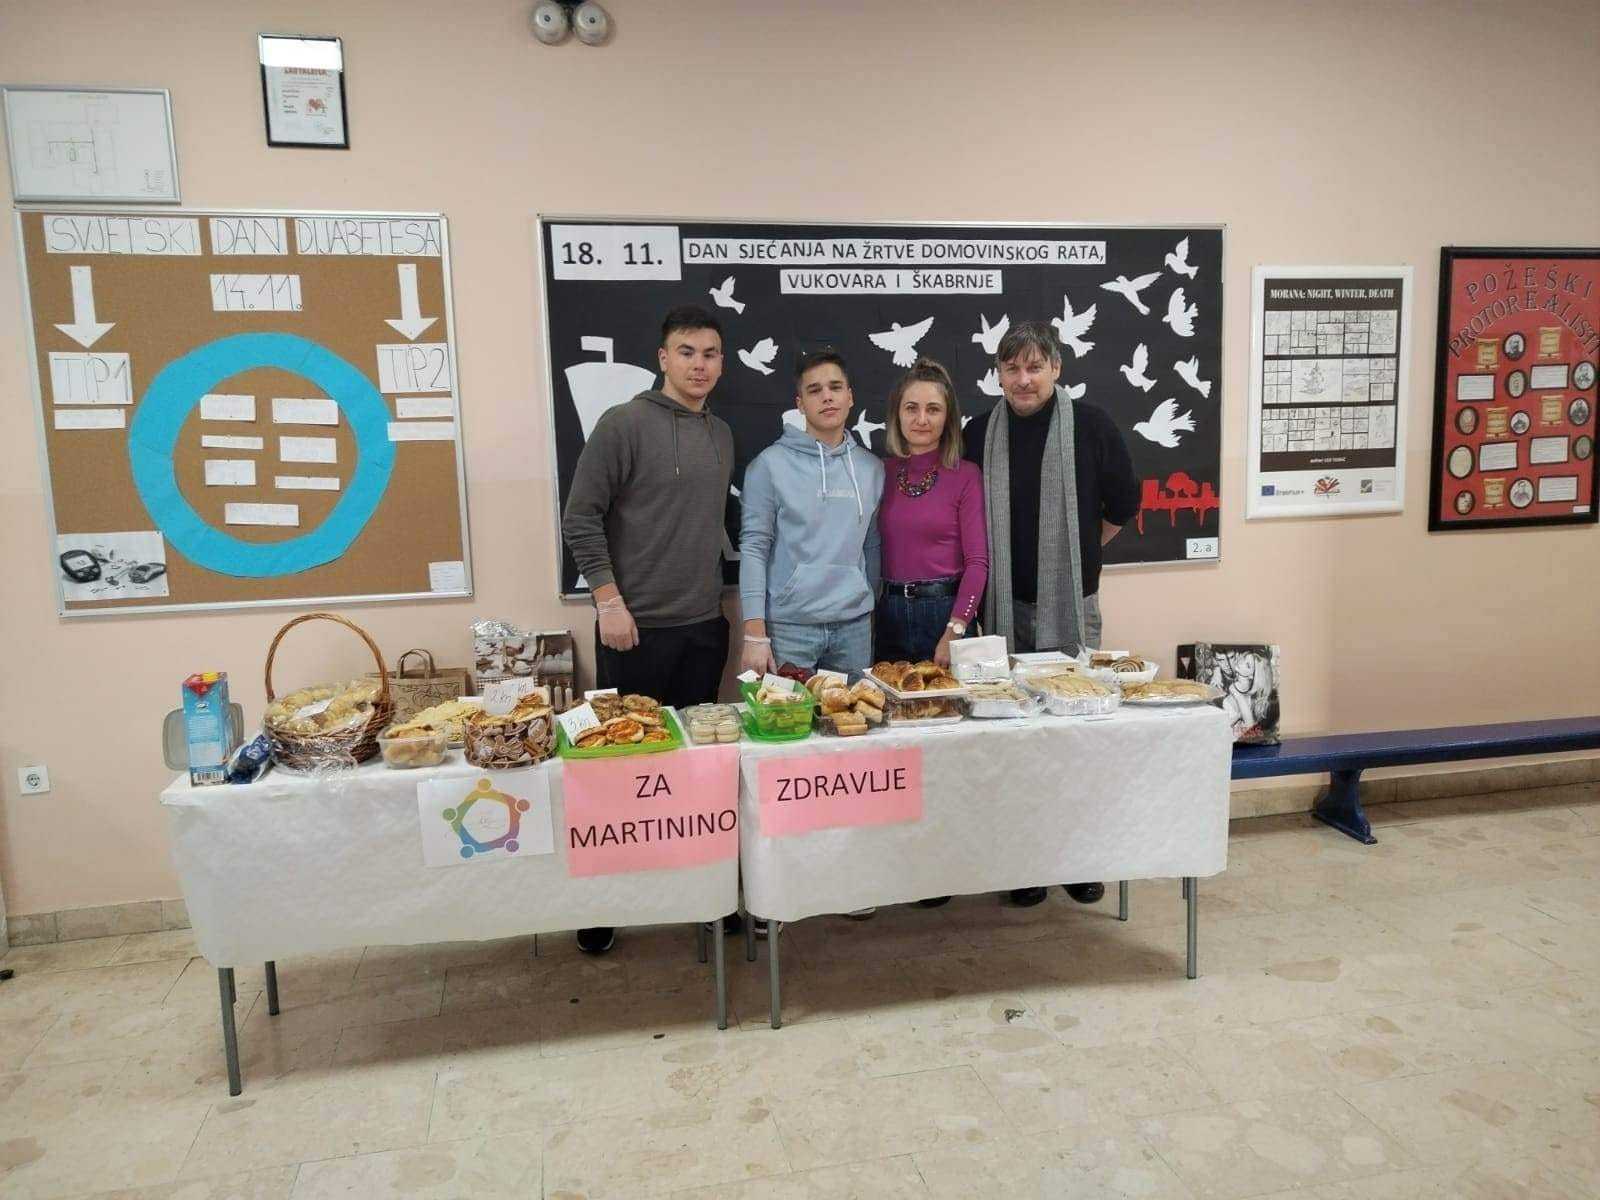 [FOTO] Ekonomska škola Požega humanitarnom akcijom prikupila 4000kn za Martinu Šimić